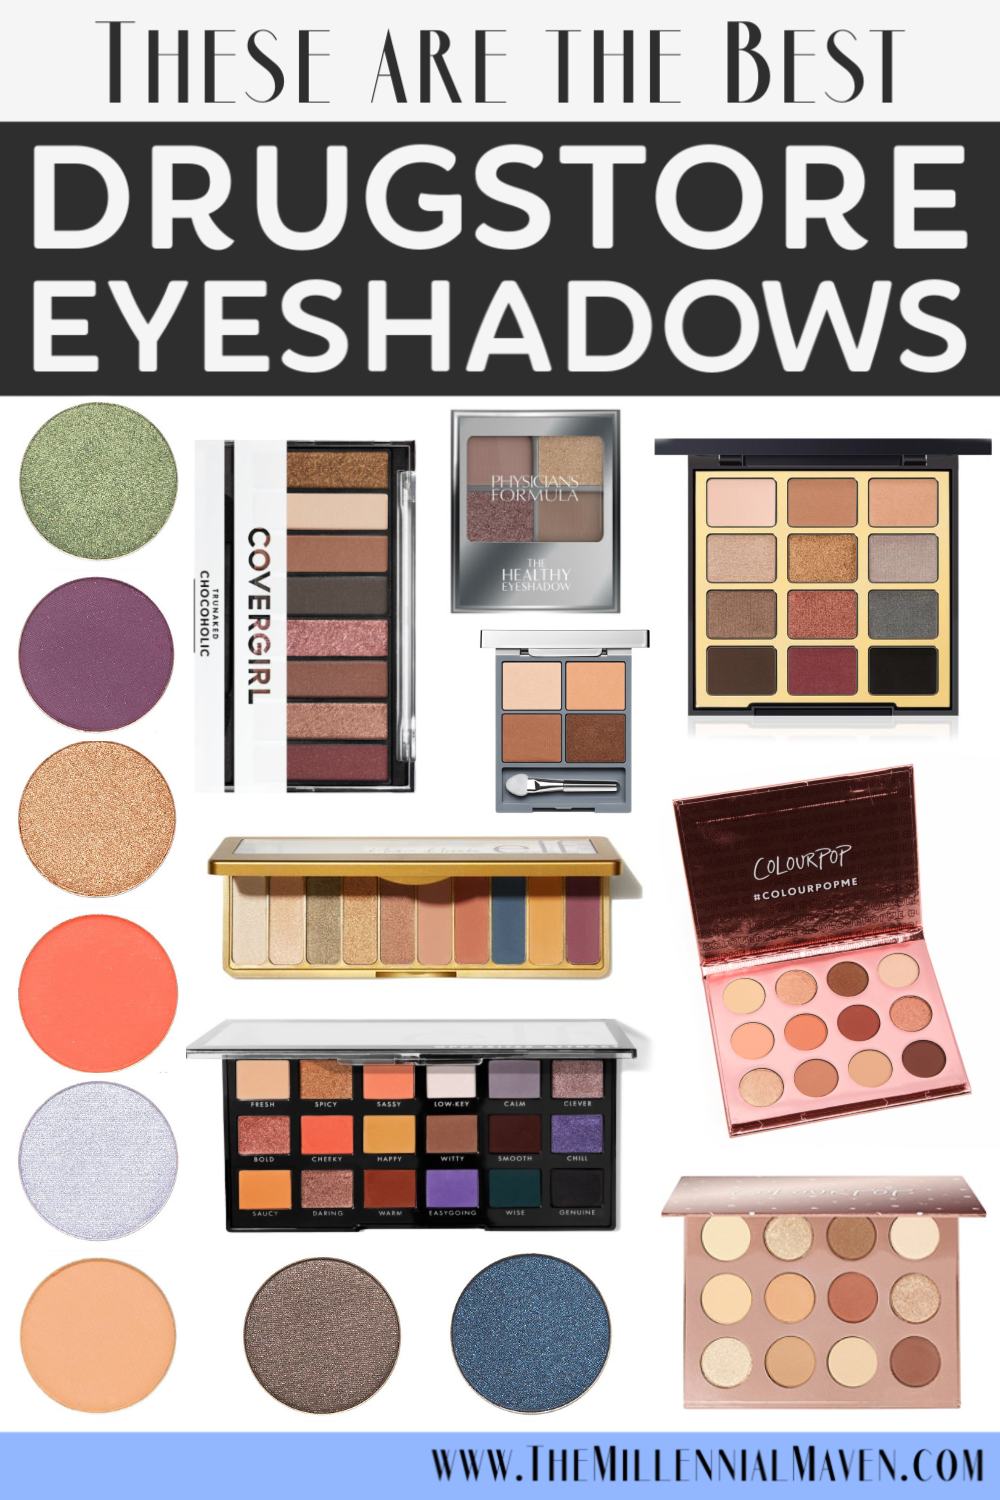 Top 10 Best Eyeshadows (Singles + Palettes!) at the Drugstore in 2021! | Drugstore Eyeshadows